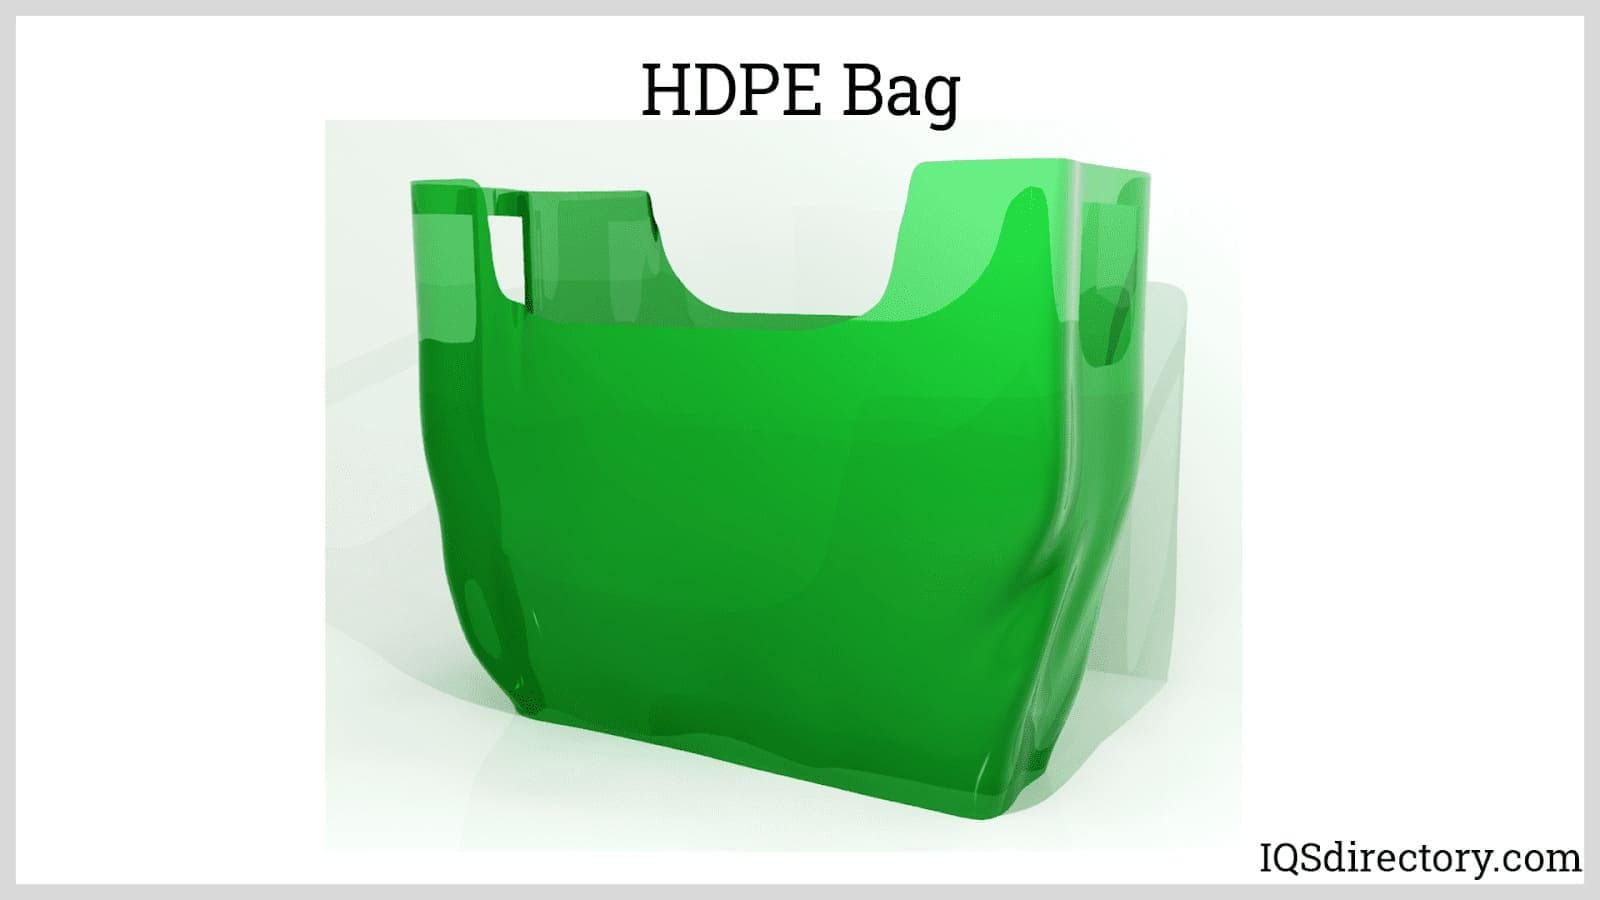 BOPP Plastic Bag - Supermarket and Hypermarket Equipment Supplier